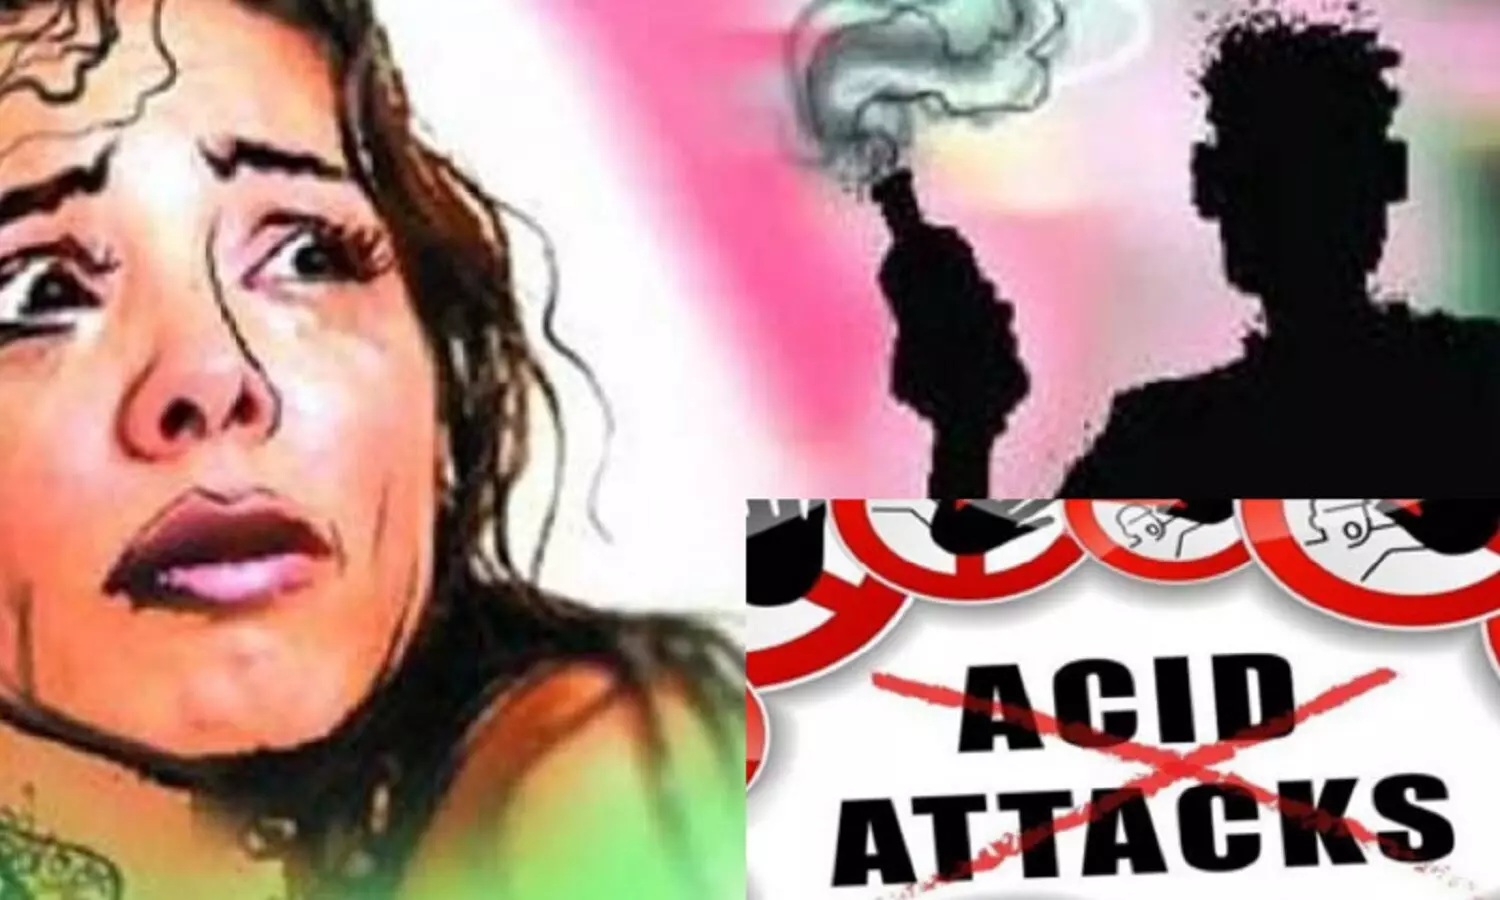 Jaipur Acid Attack: जयपुर में एसिड अटैक! दो छात्रों पर तेजाब फेंक दिया, CCTV में घटना रिकॉर्ड हो गई